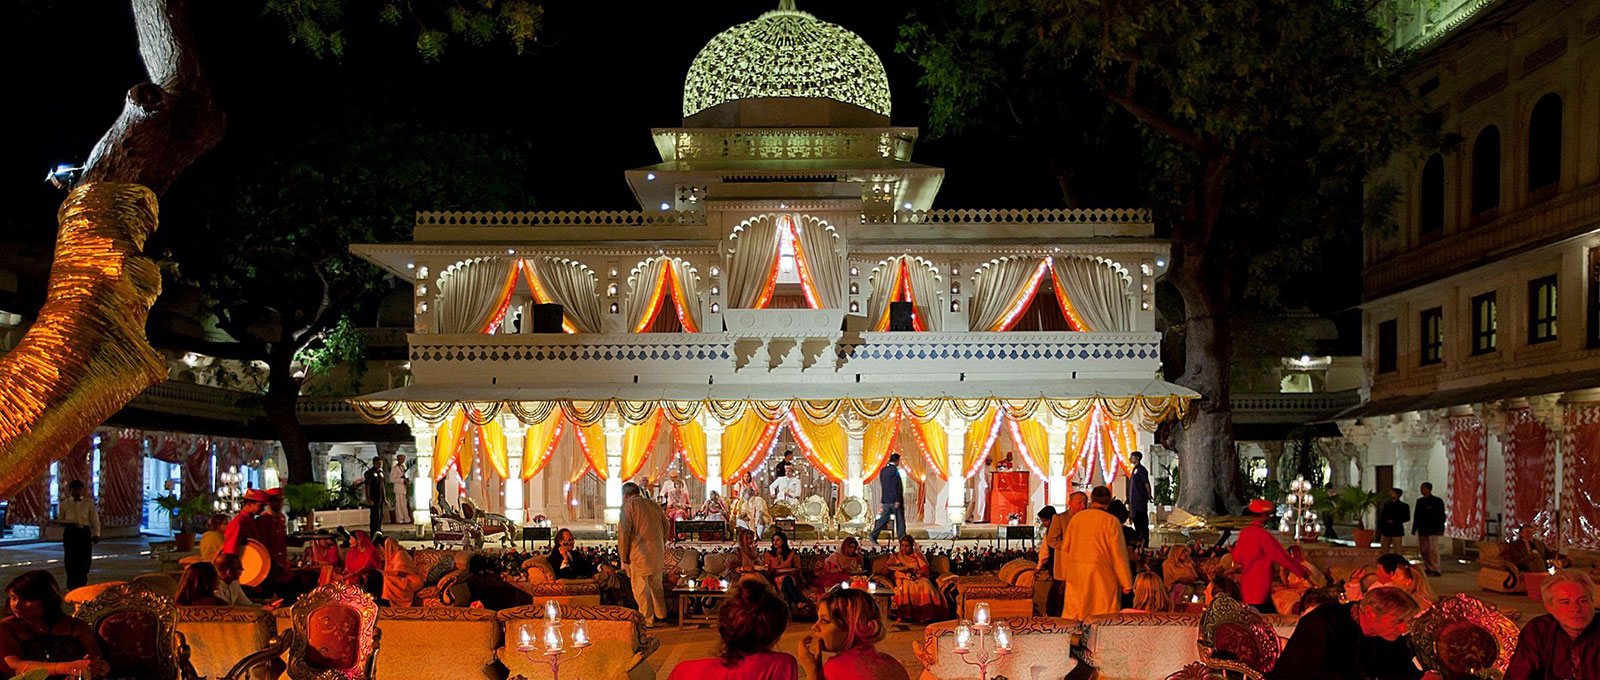 Weddings at The Zenana Mahal